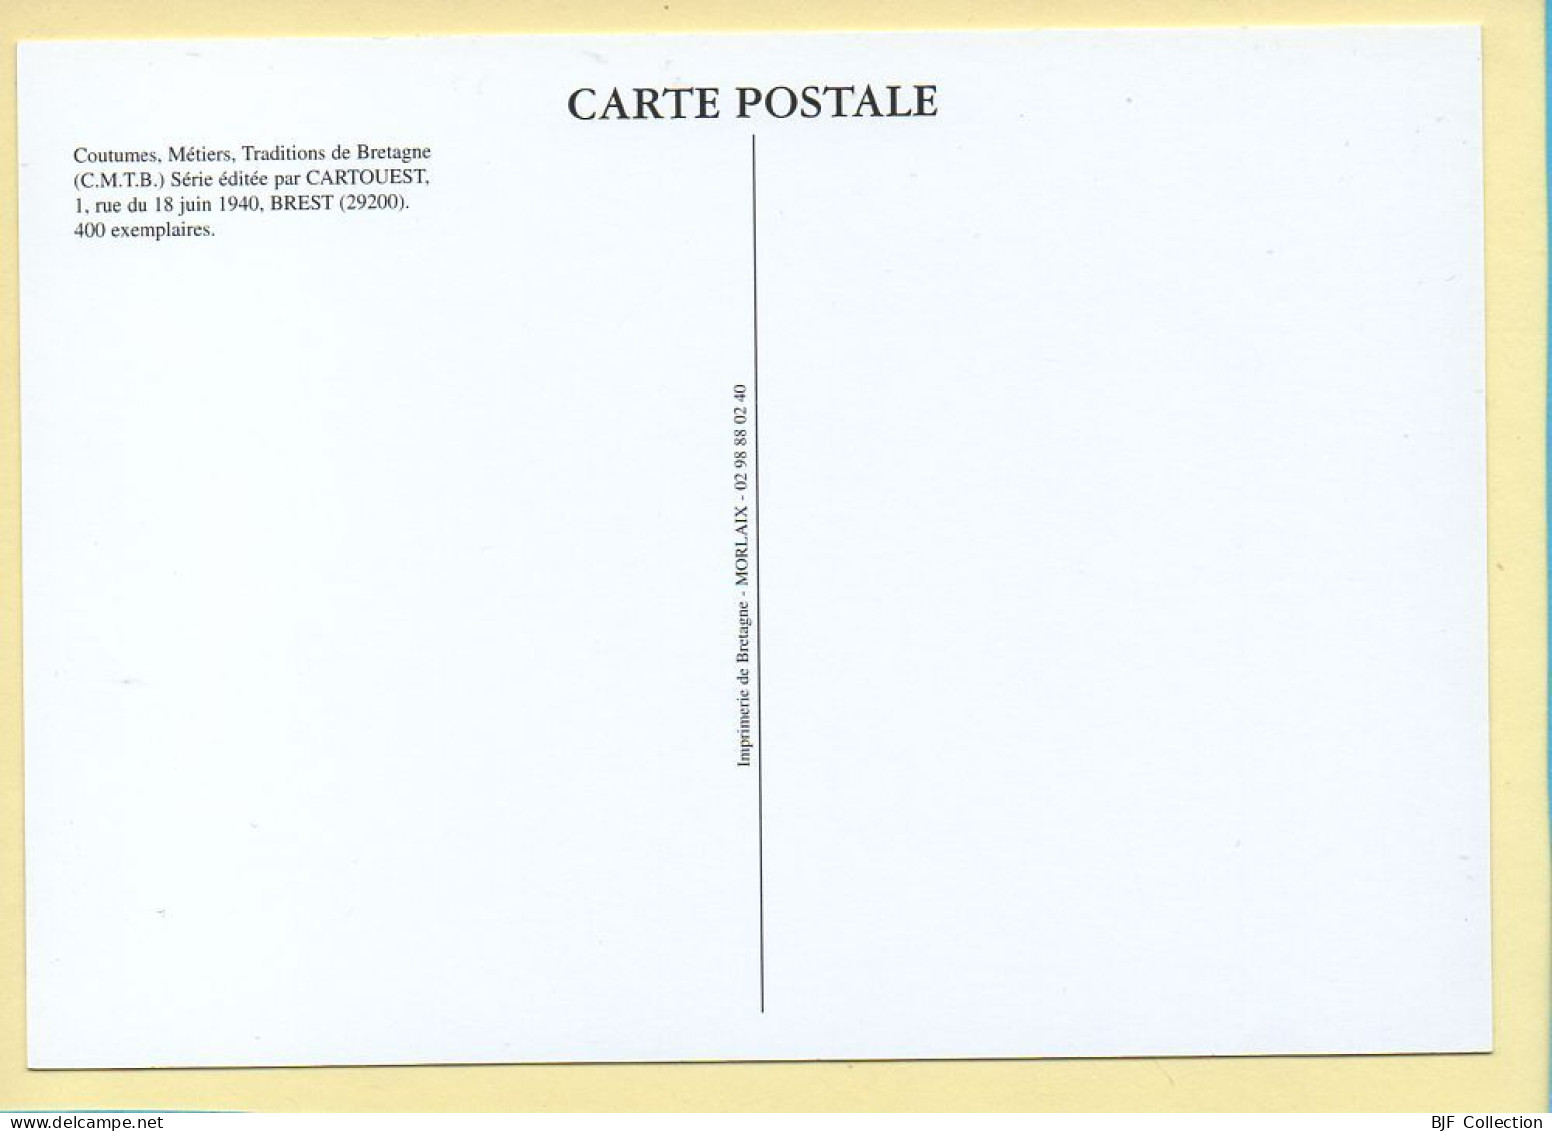 Récolte De Pommes De Terre Chez Mr LEMOINE Maraîcher / GUERANDE (44) (MAURICE Y.) C.M.T.B. N° 130 / 400 Ex (CARTOUEST) - Bauern